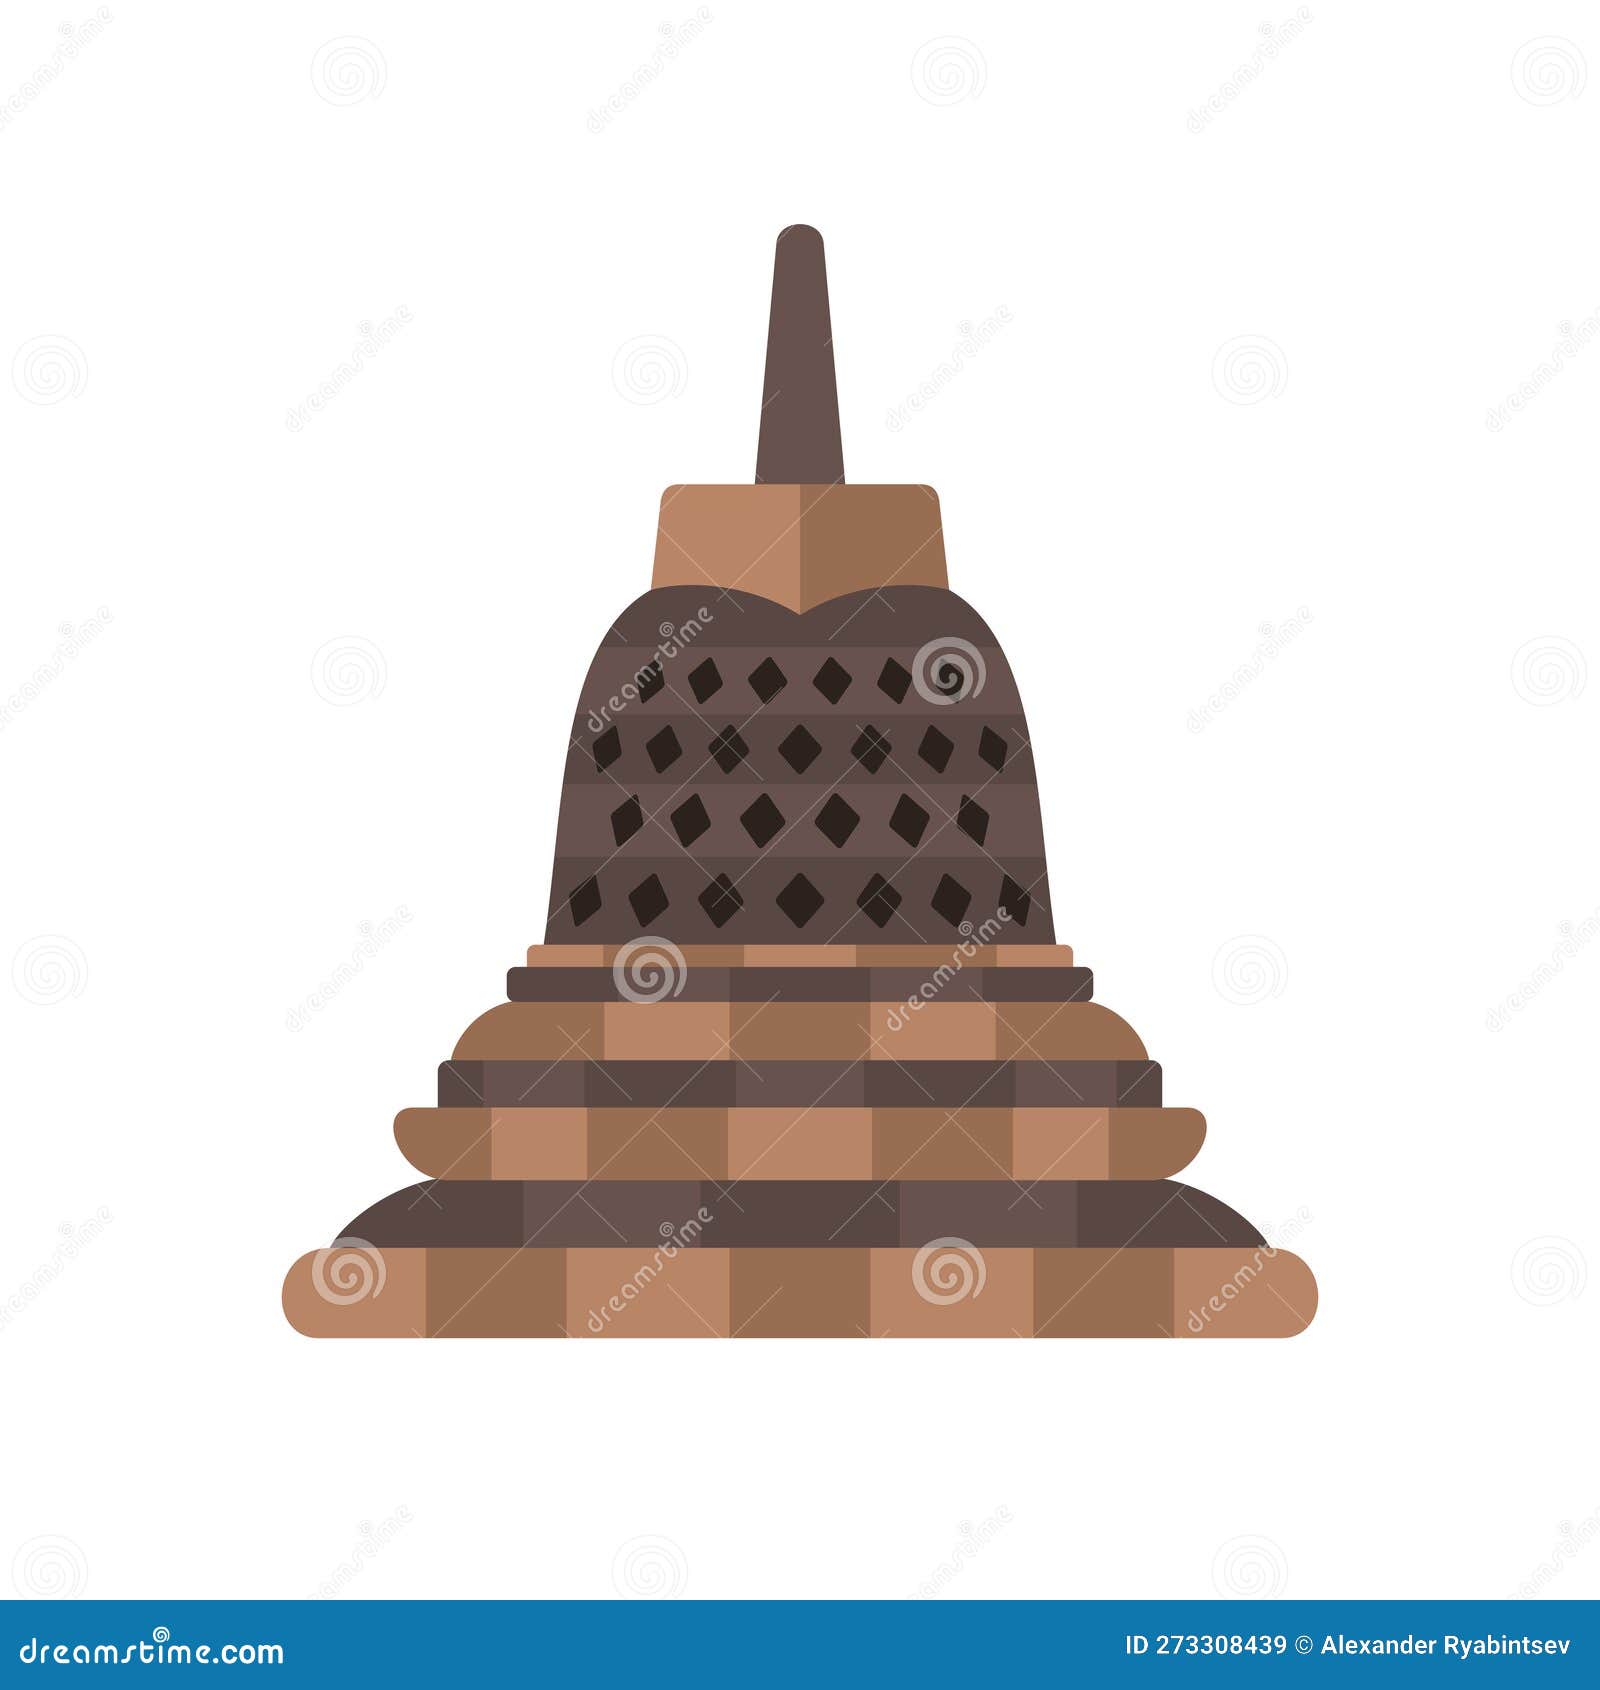 Borobudur Temple Stupa Indonesian Landmark Buddhist Temple Stock